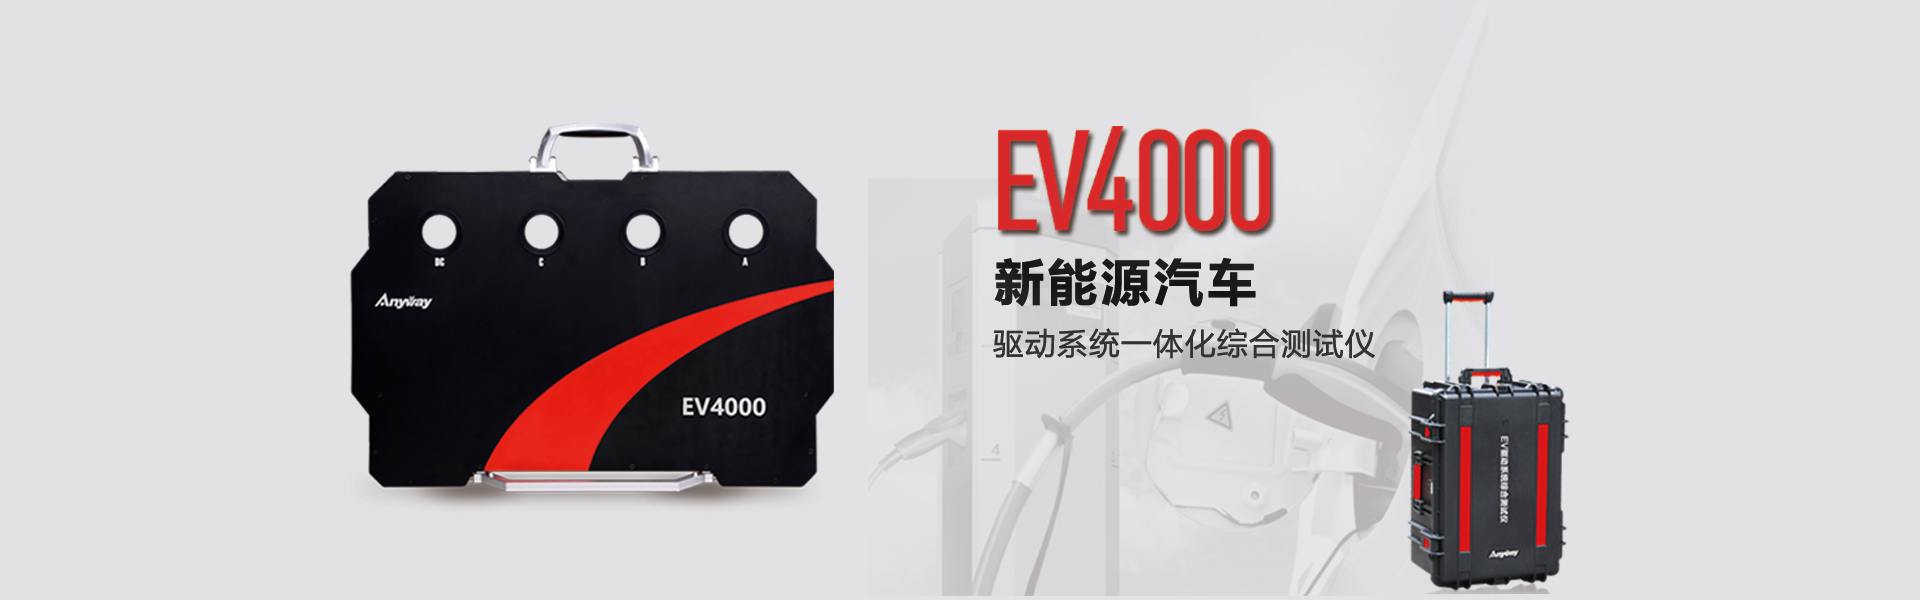 EV4000動力系統綜合測試儀